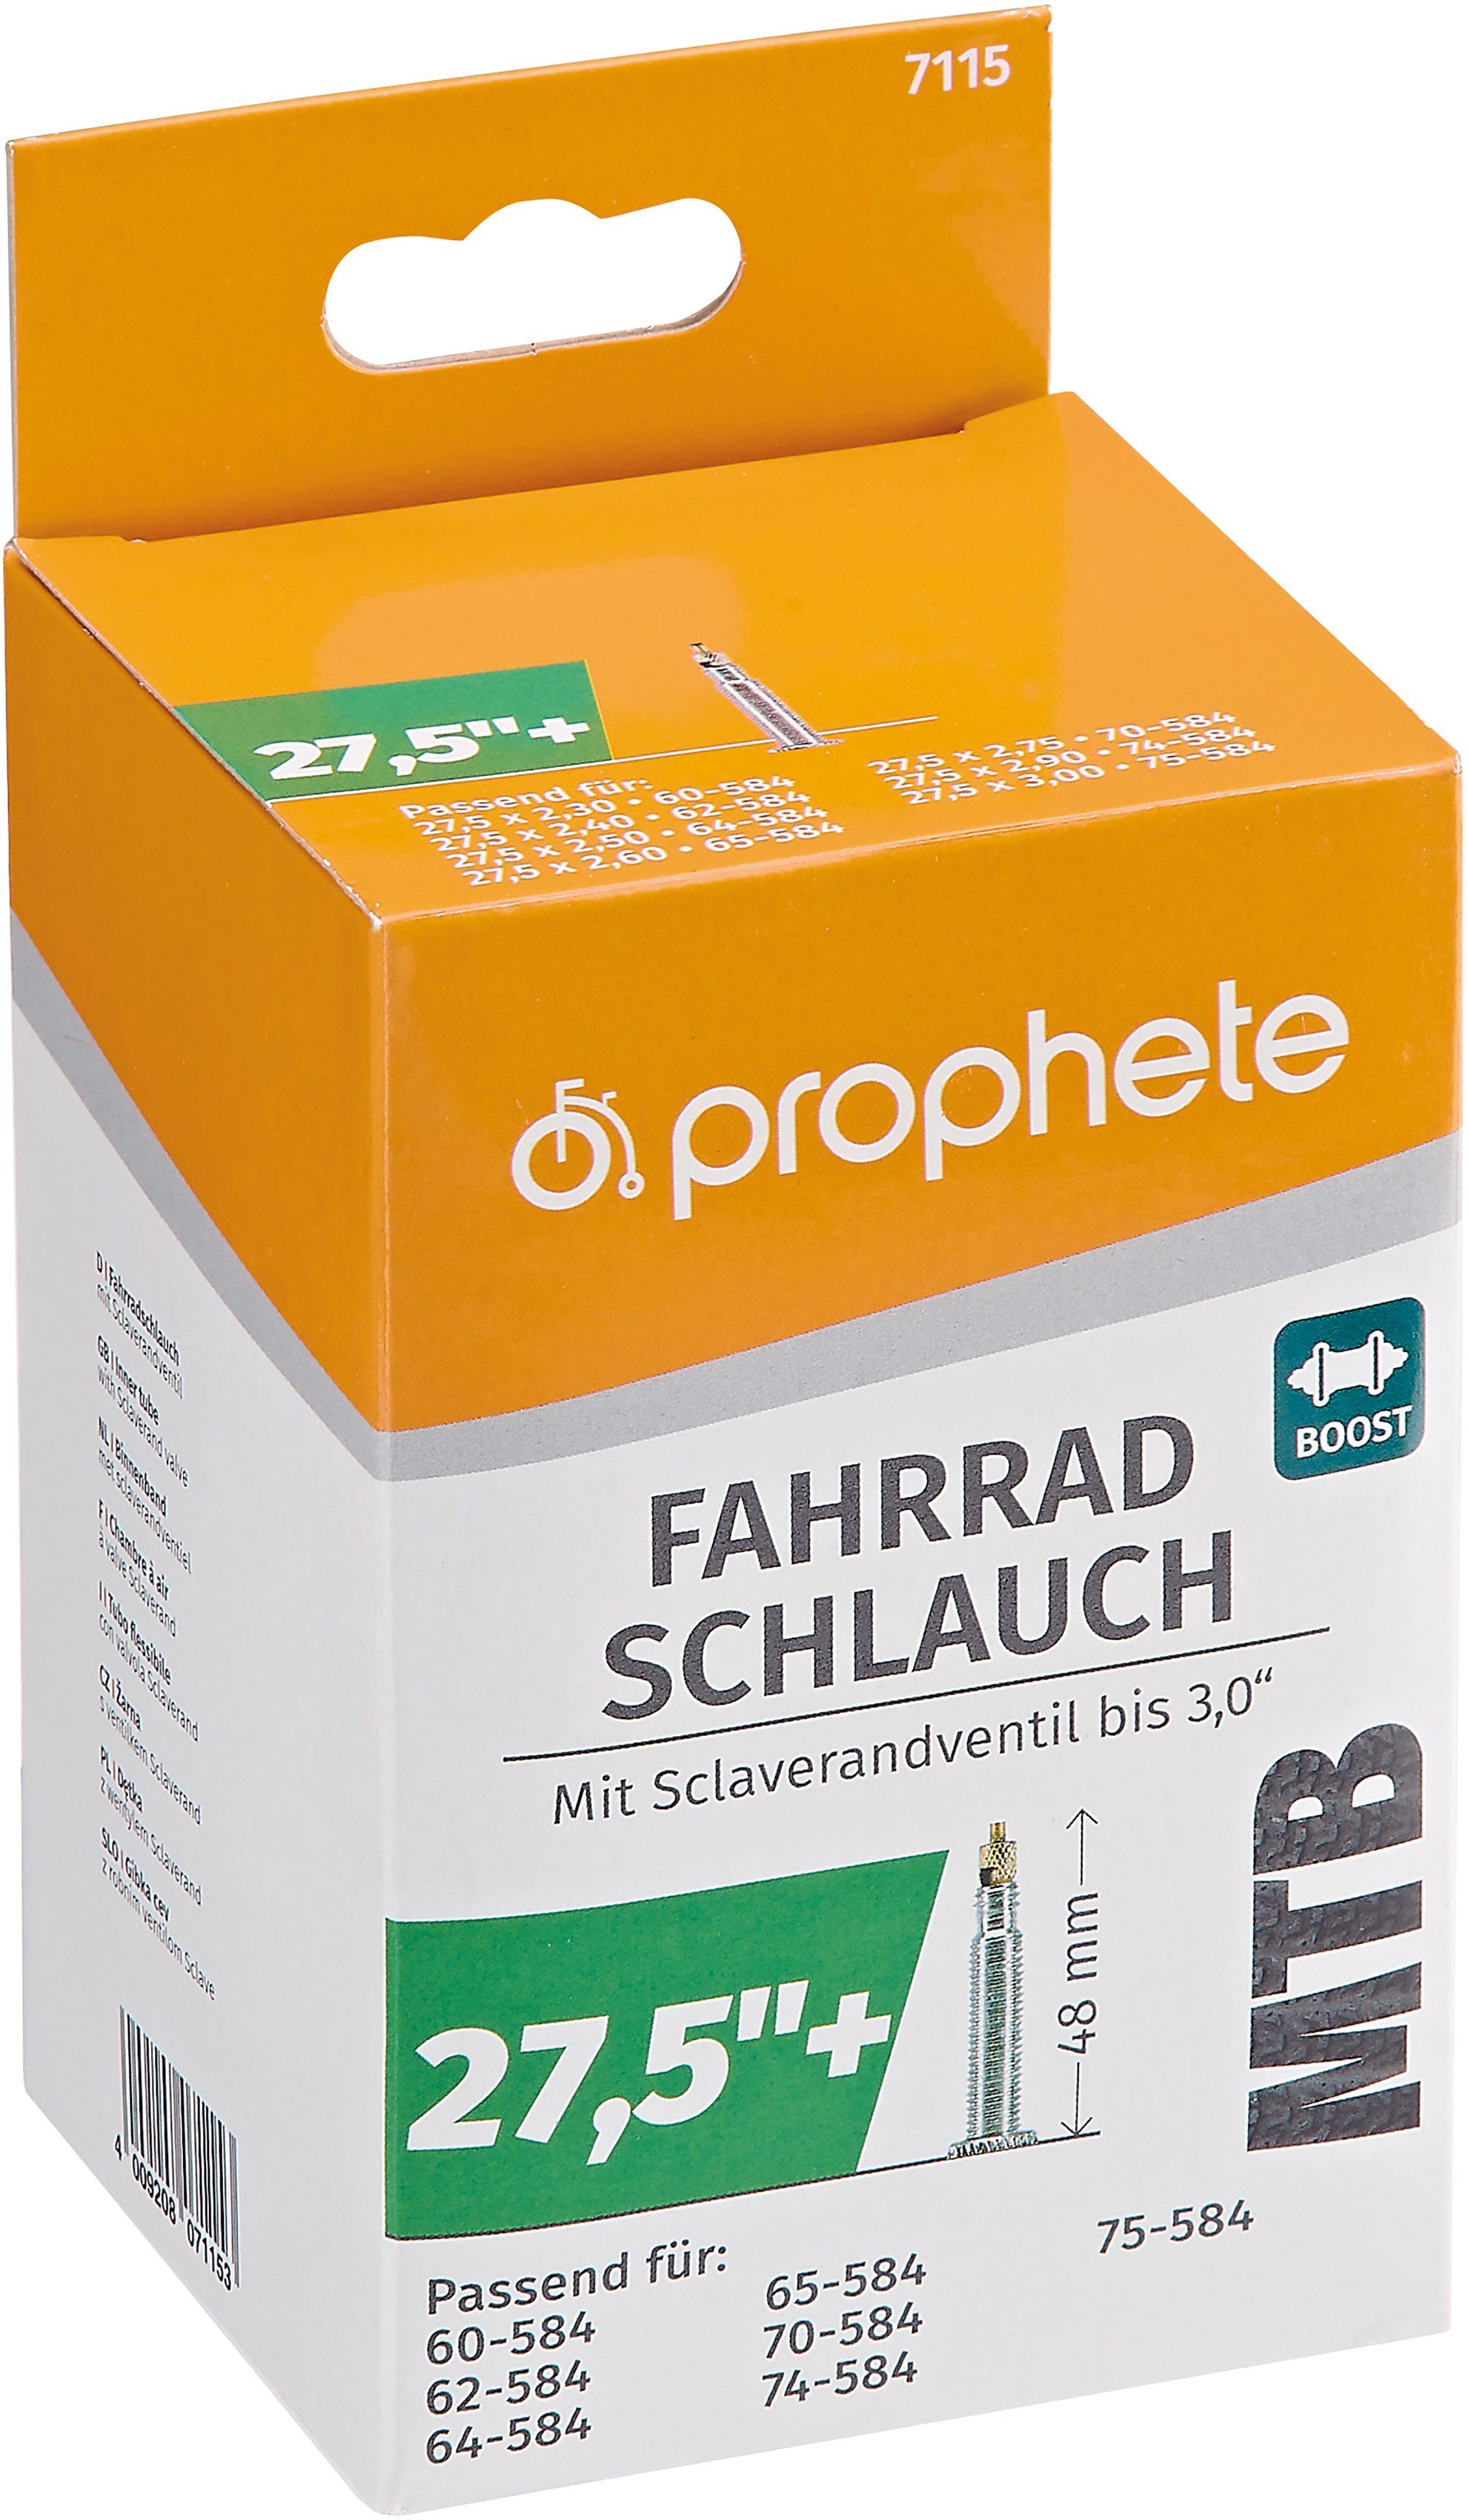 Prophete Fahrradschlauch MTB Boost Size Schlauch, 27,5+ Zoll (69,85 cm)